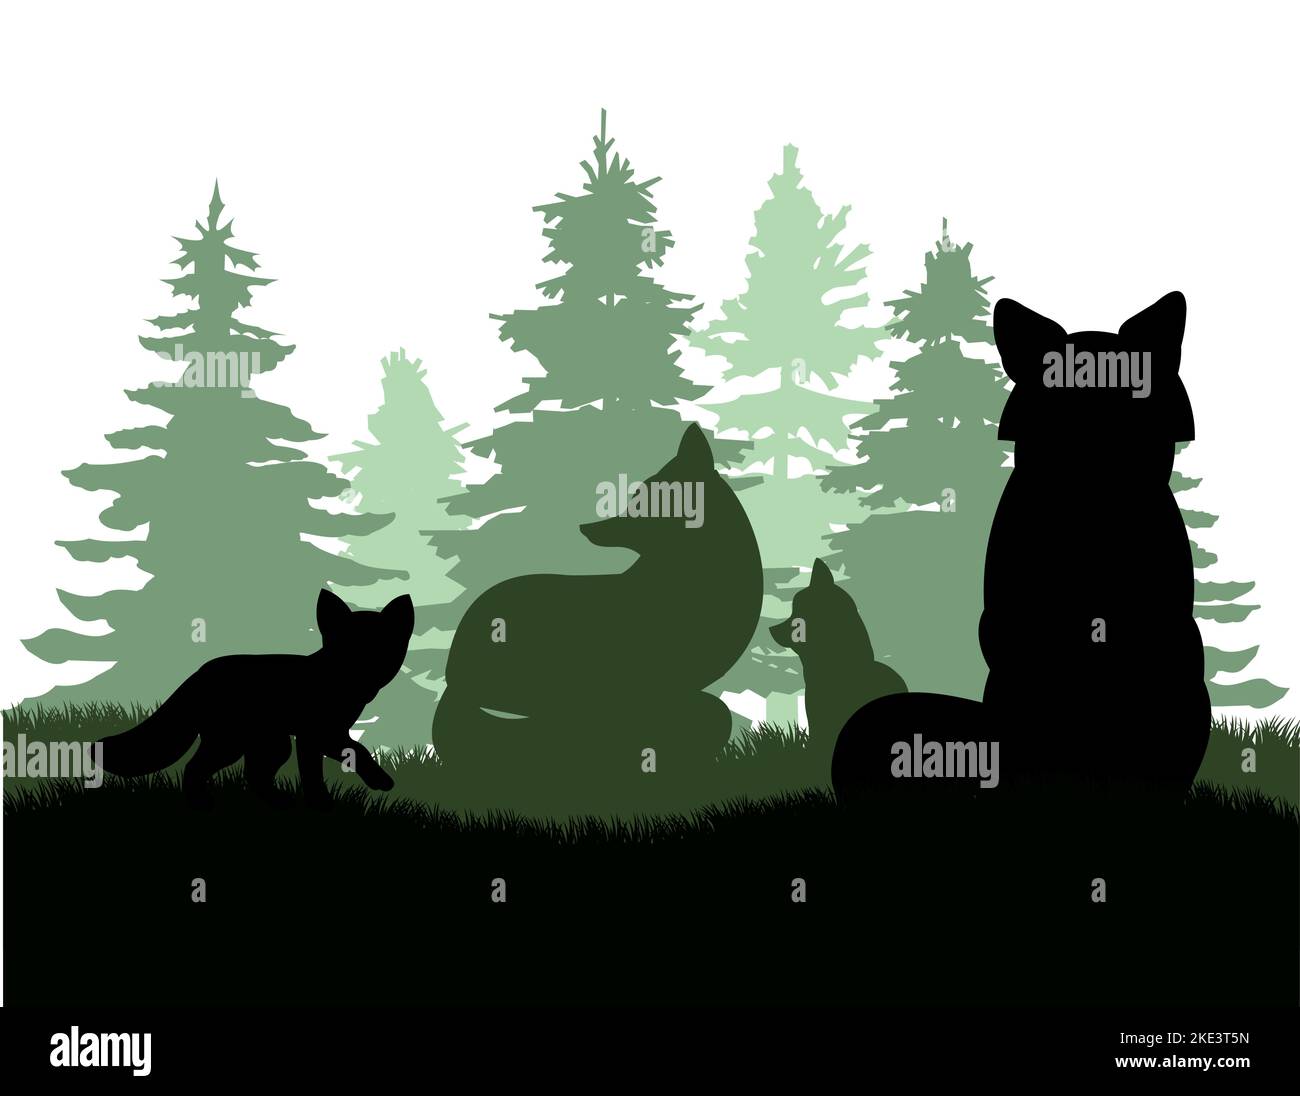 Famille de renards dans le défrichement de forêts de conifères. Silhouette d'animal. Photo de la vie sauvage. Isolé sur fond blanc. Vecteur. Illustration de Vecteur